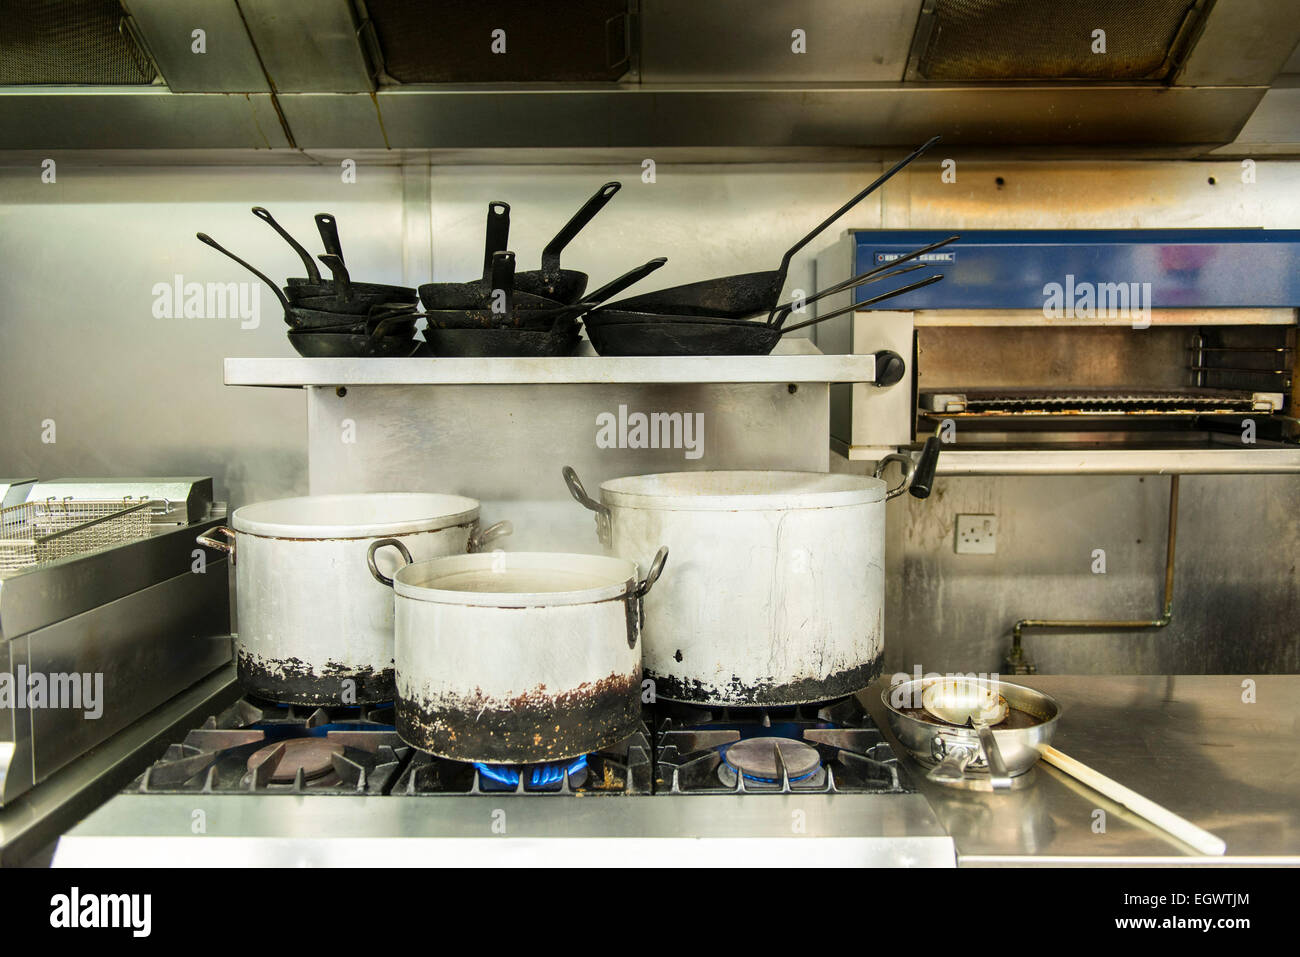 Pentole, padelle e altri utensili da cucina come spatole, coltelli, mestoli, ecc ad adornare una cucina professionale per un cuoco Foto Stock